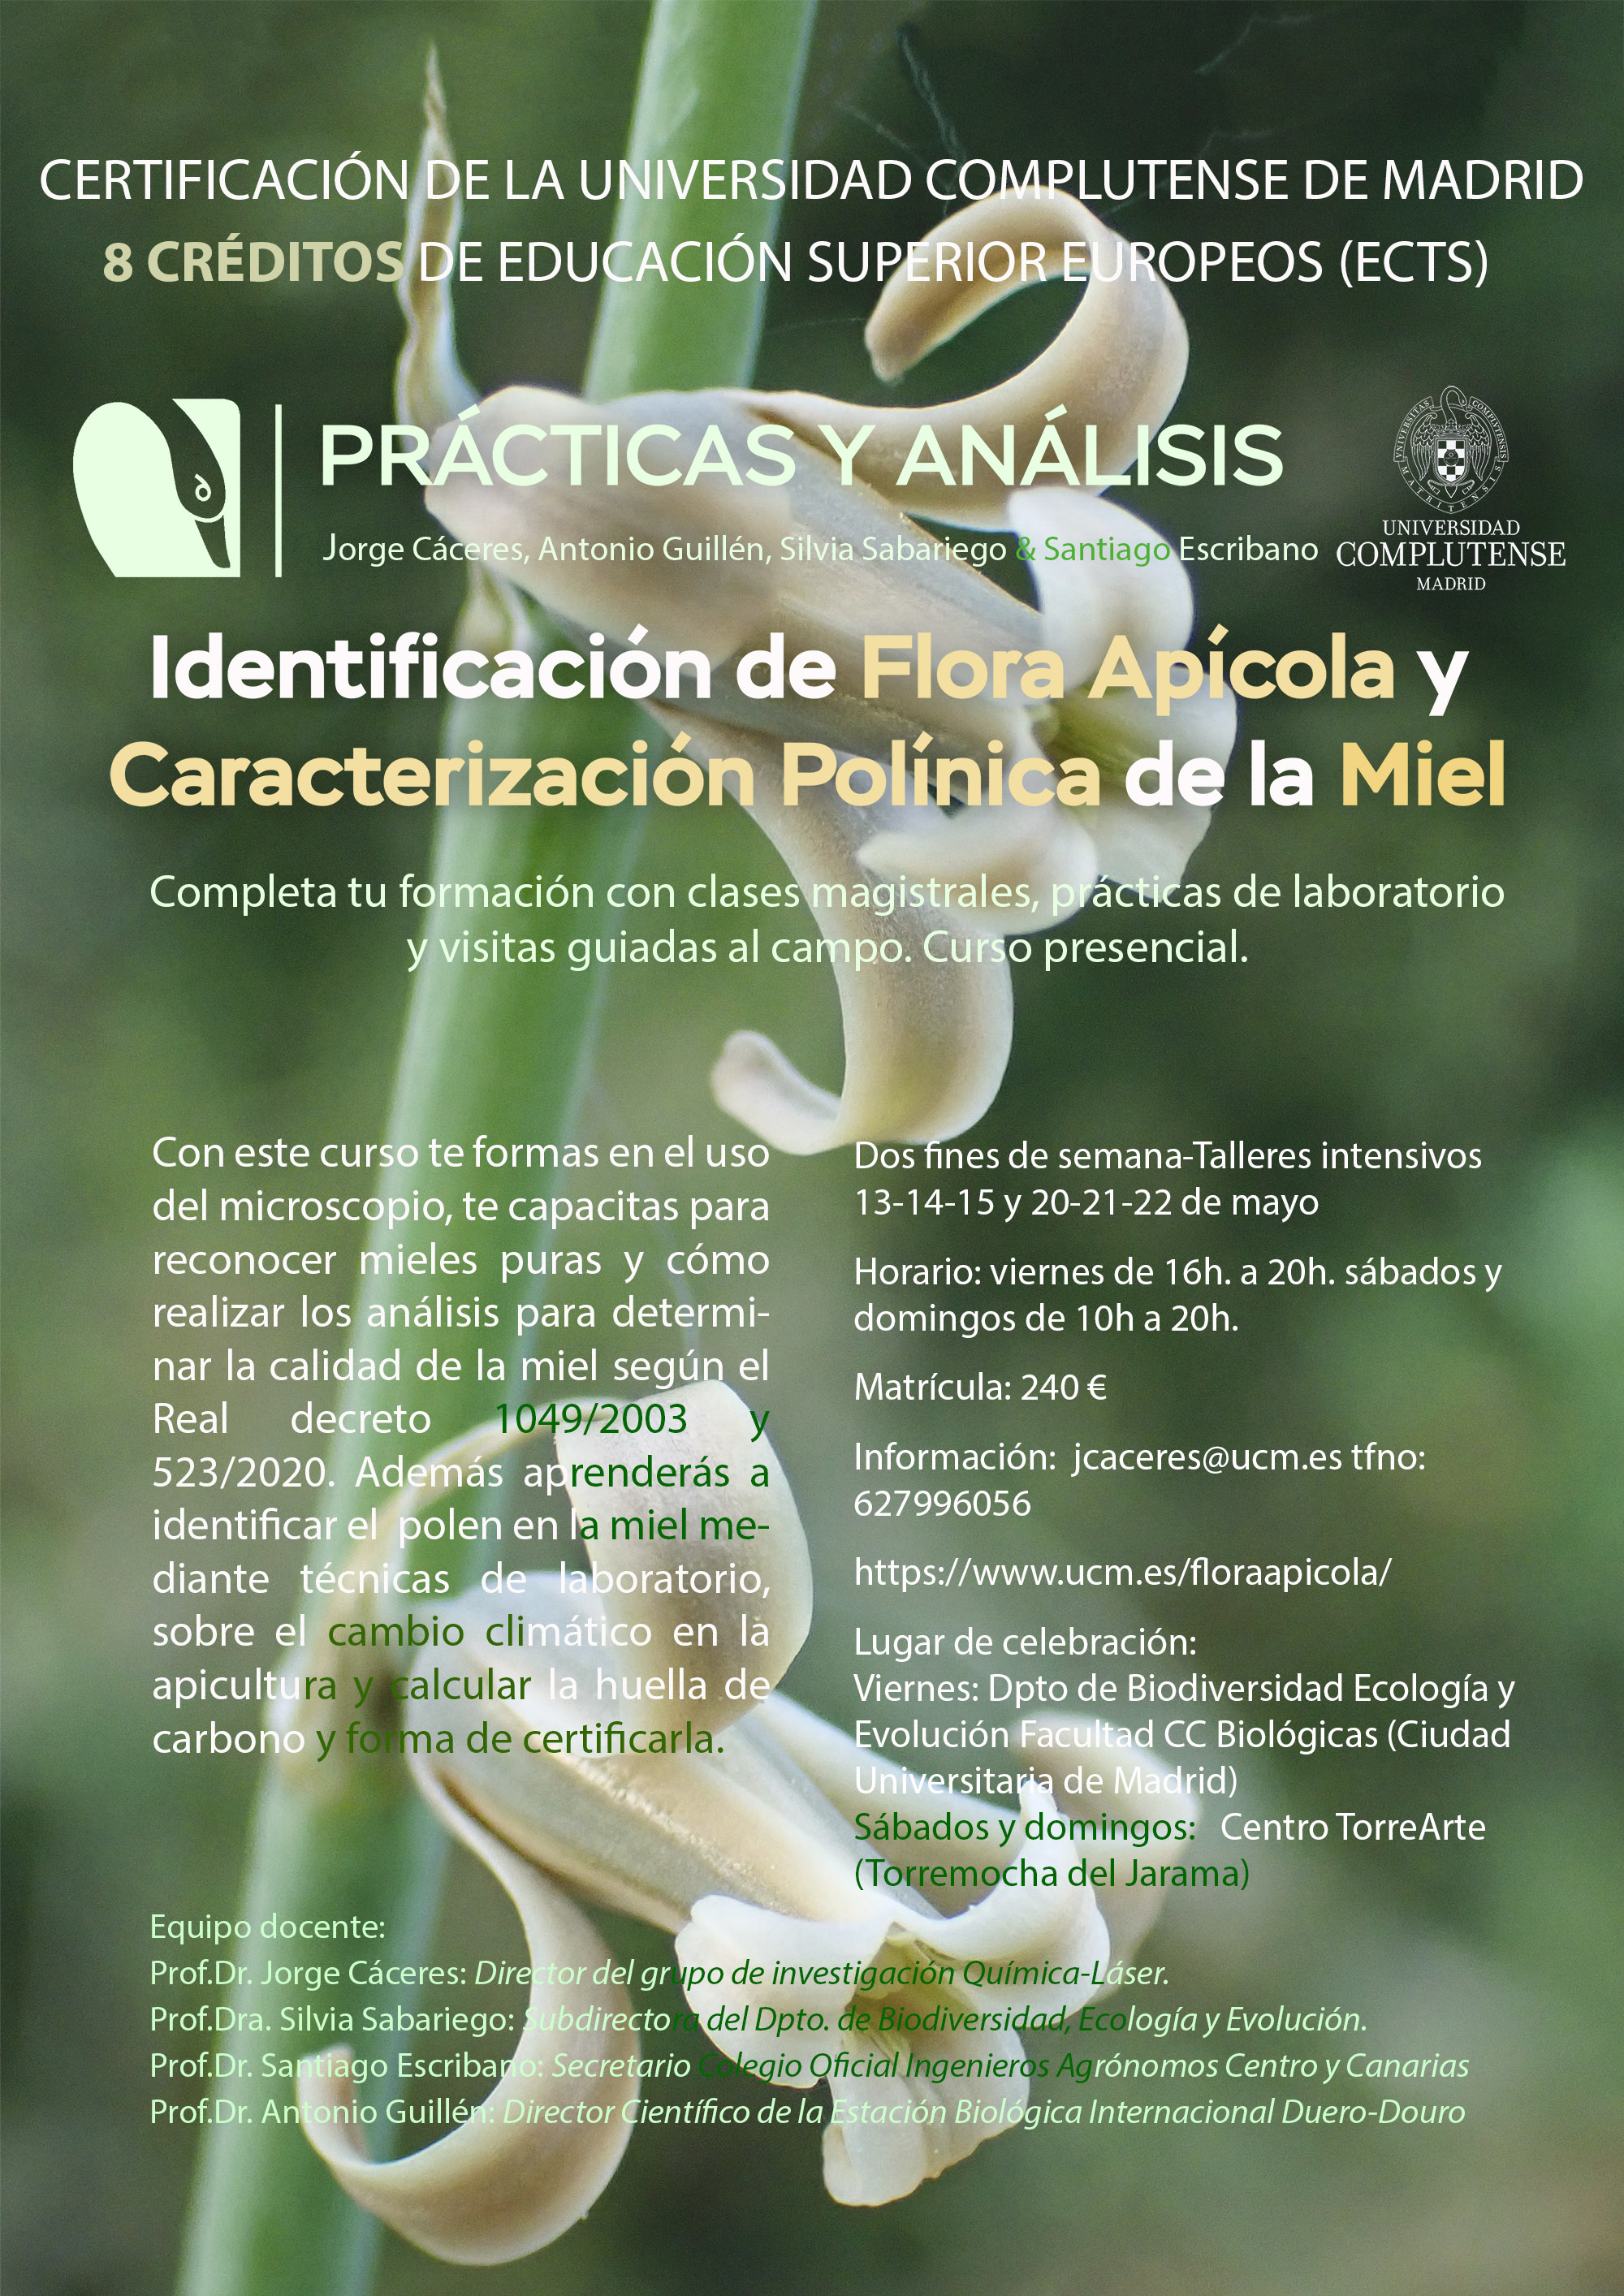 Curso "Identificación de Flora apícola y caracterización polínica de la miel. Prácticas y análisis"